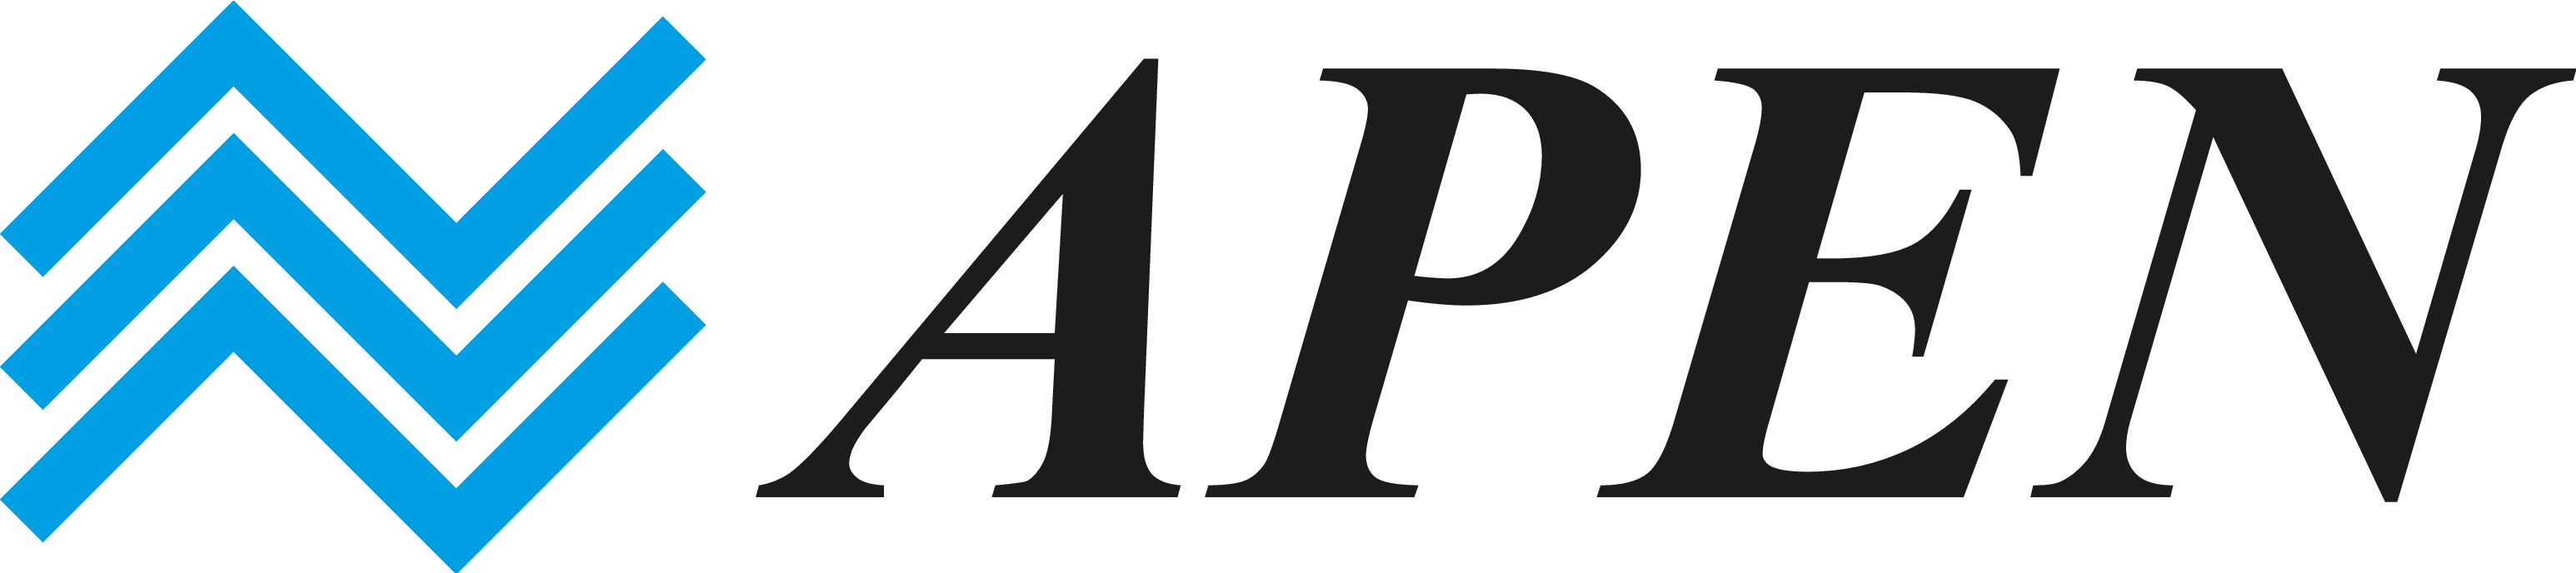 APEN Logo